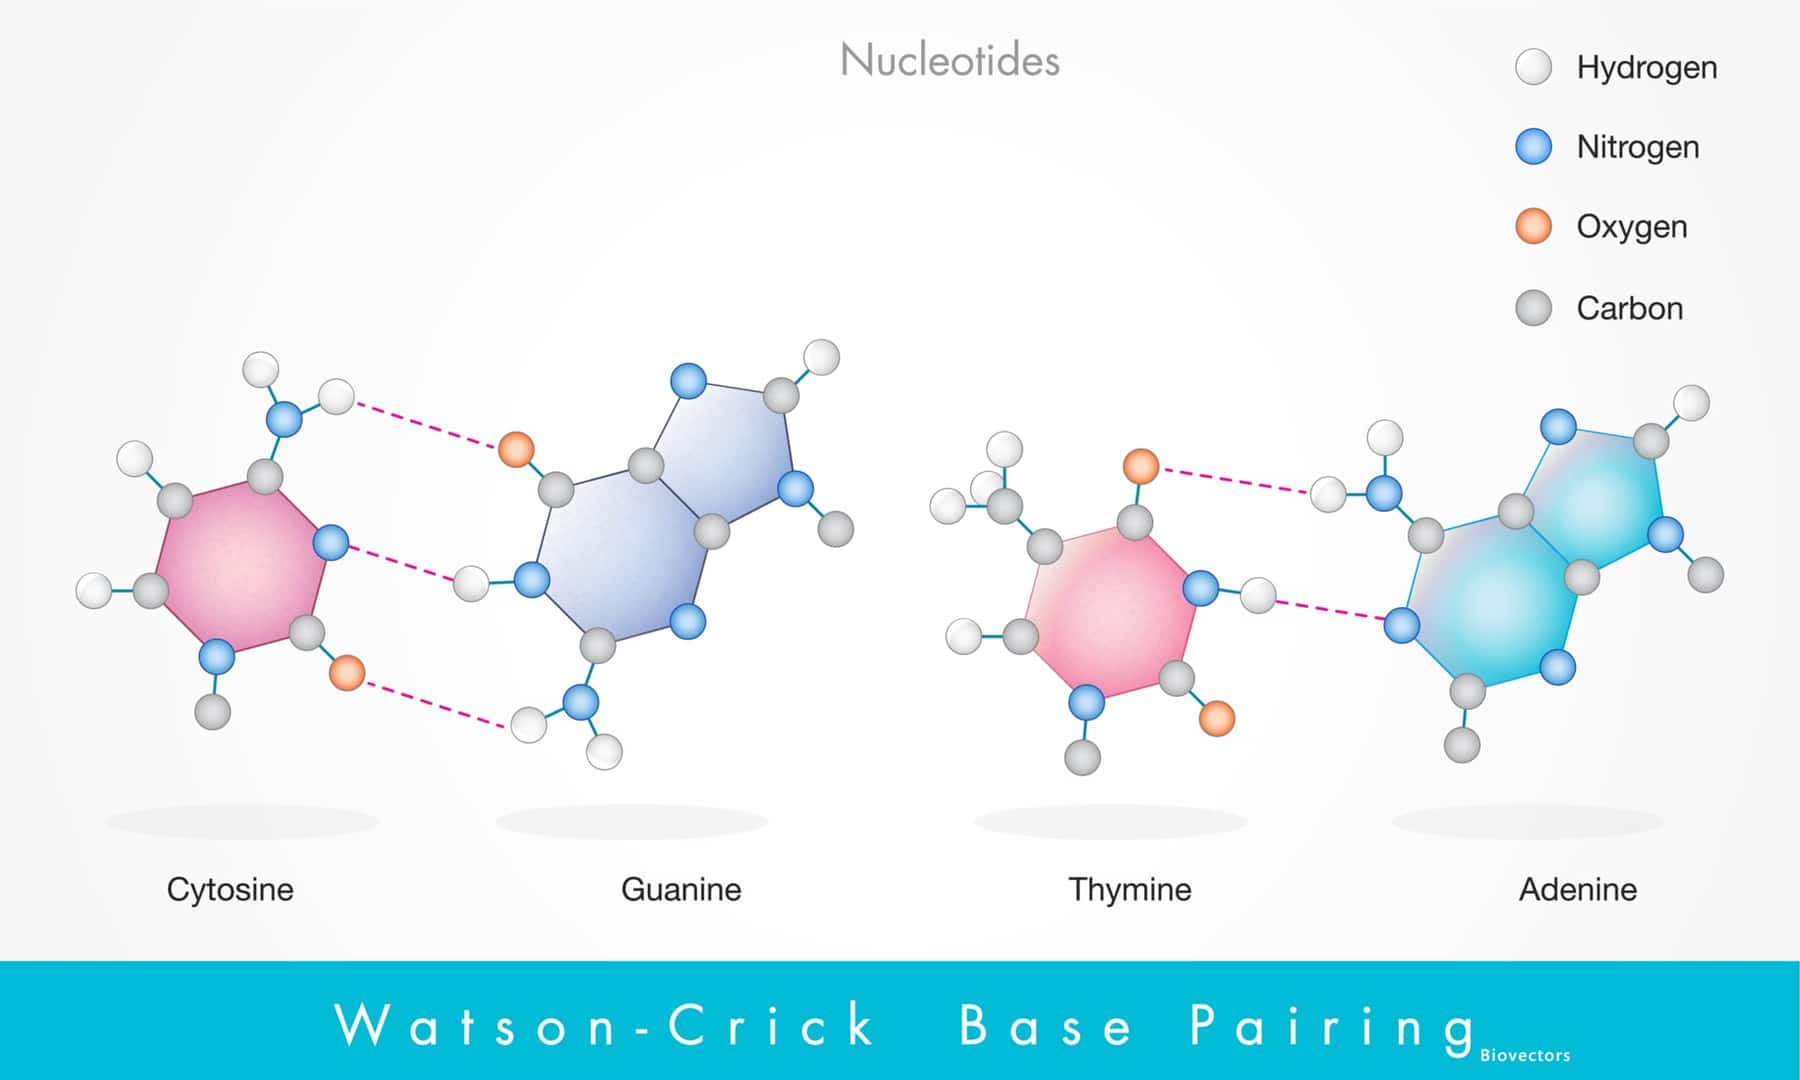 水素結合を形成するヌクレオチド、またはワトソン・クリック塩基対プリン塩基とピリミジン塩基が水素結合